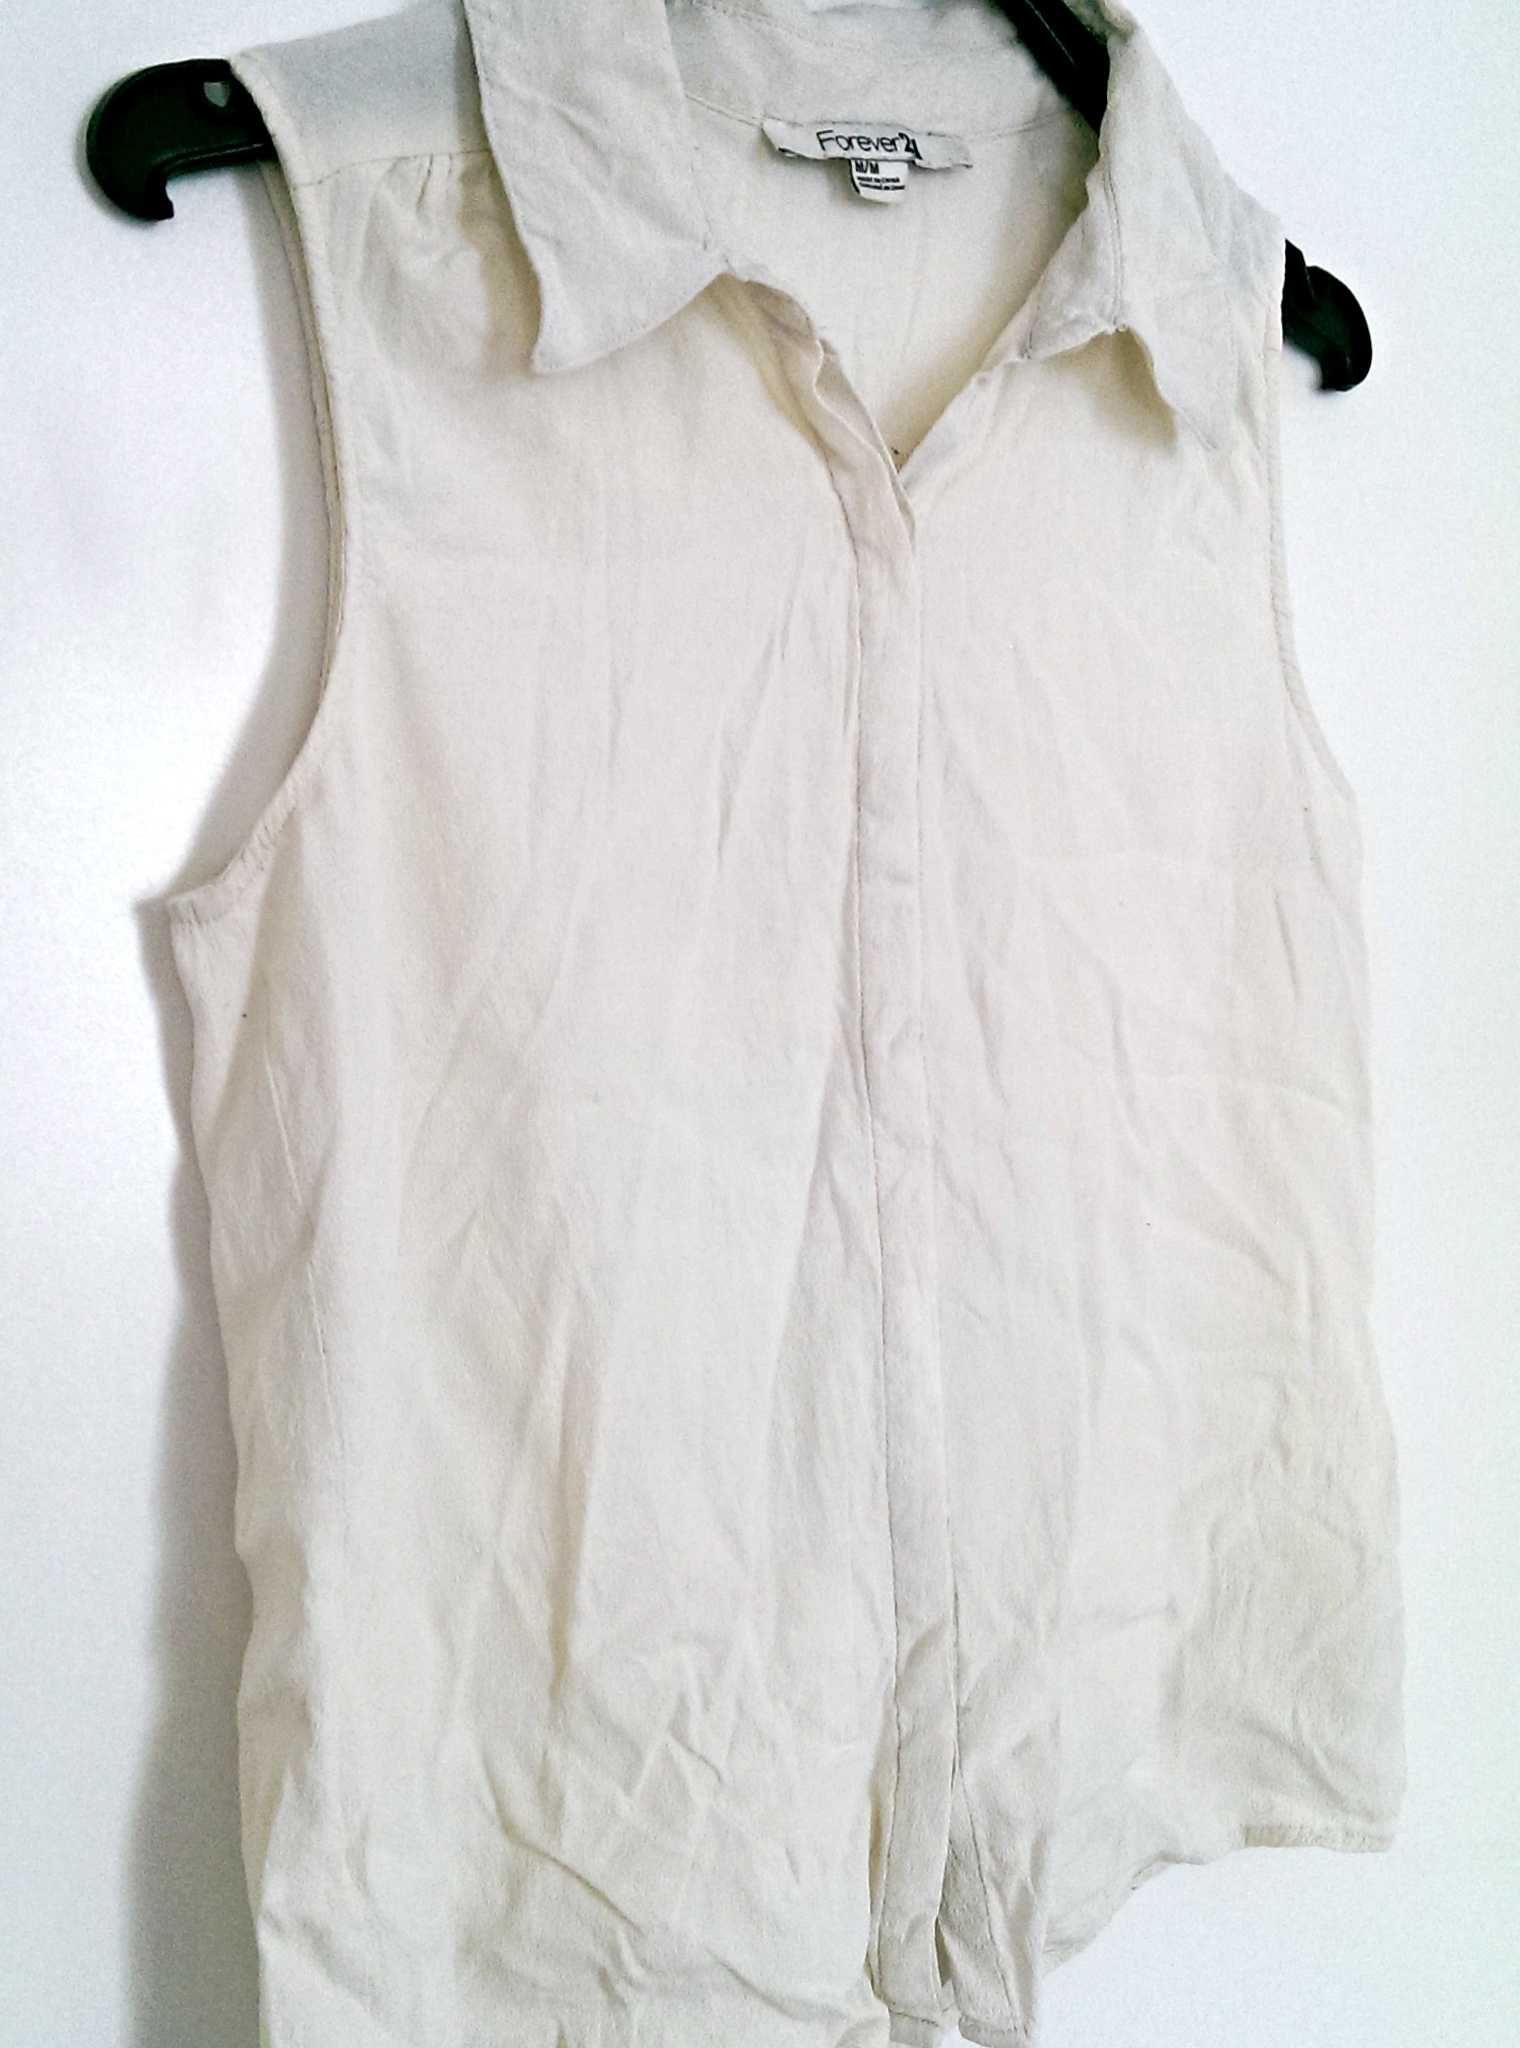 Kremowa bluzka koszula bez rękawów biała elegancka Forever 21 M